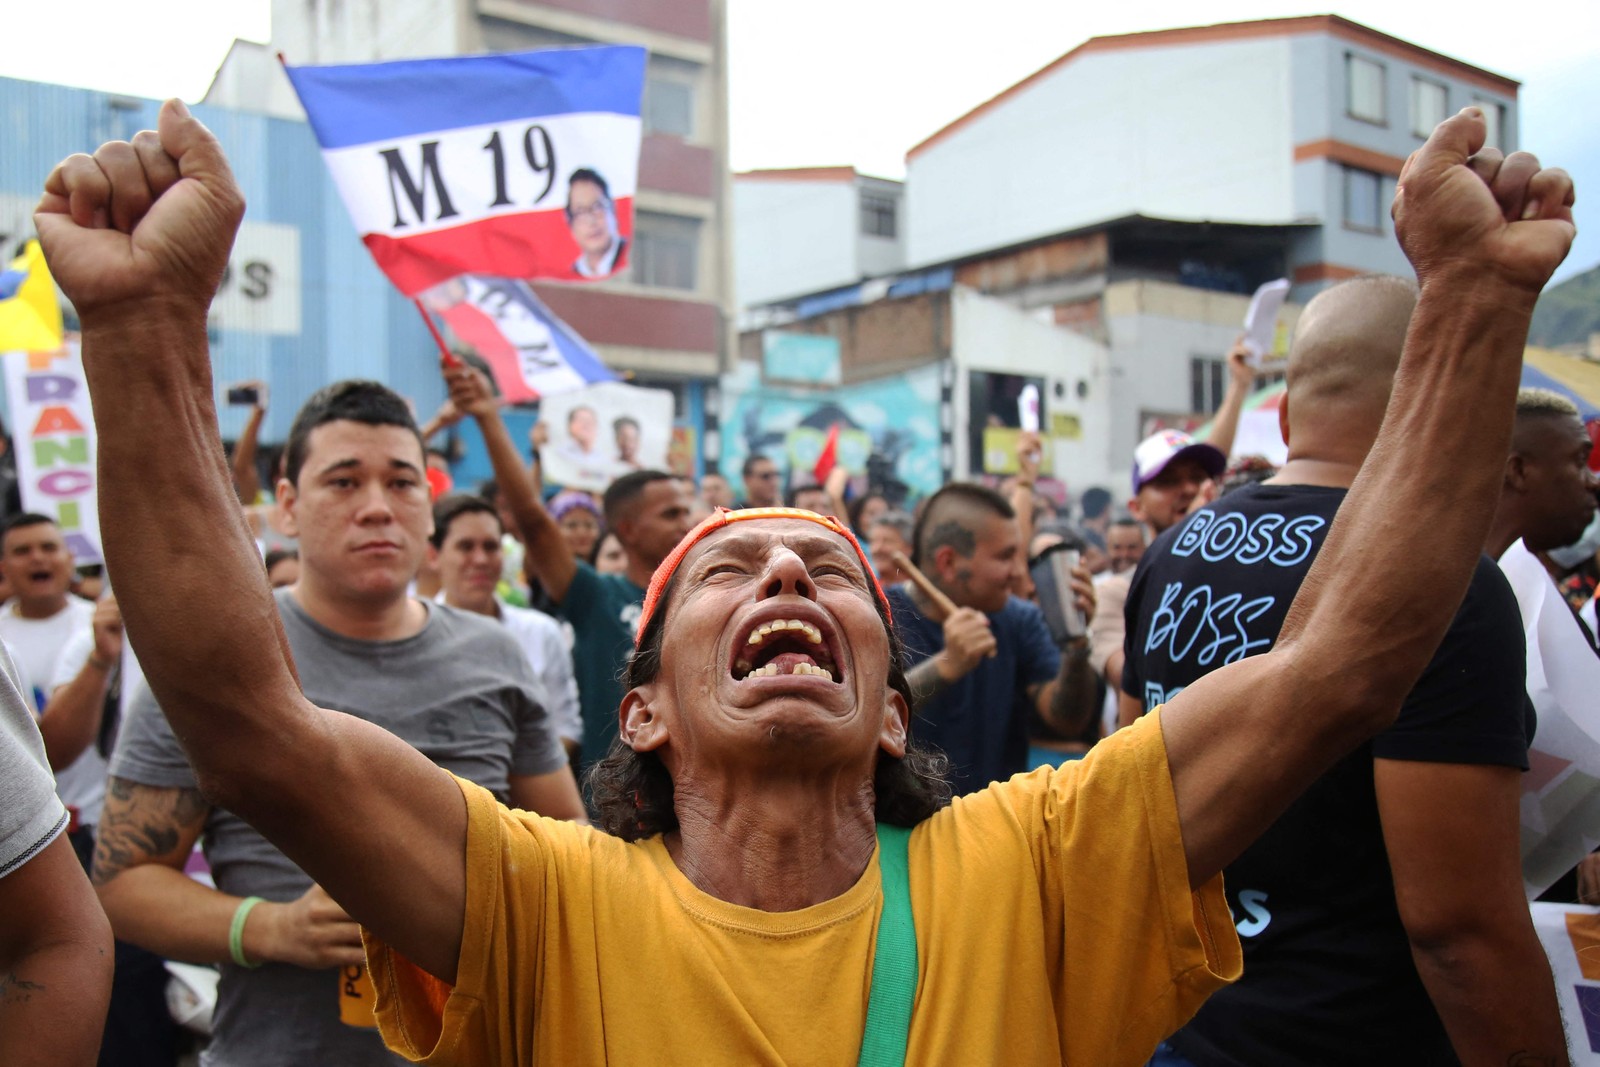 Partidários do candidato presidencial de esquerda colombiano Gustavo Petro comemoram após a eleição presidencial em Cali, Colômbia — Foto: Paola MAFLA / AFP